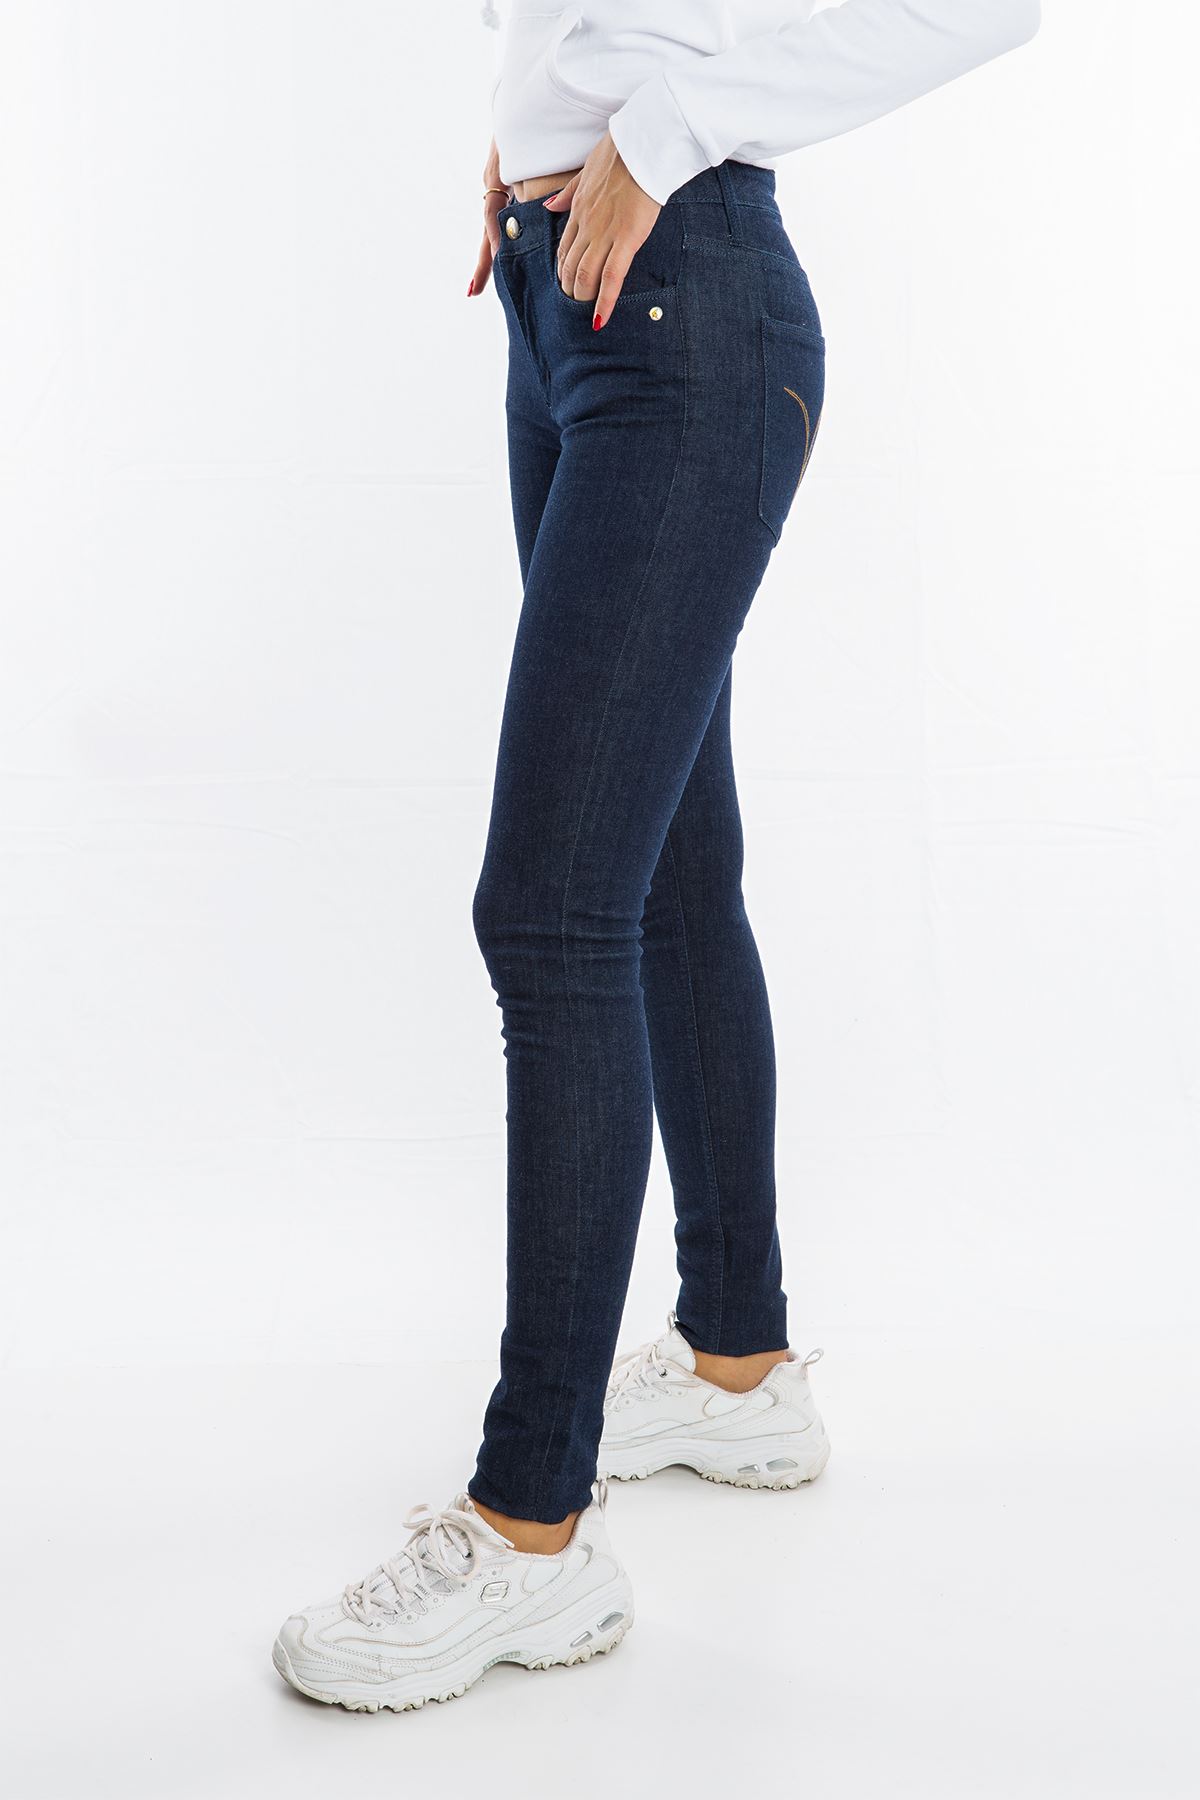 Monkee Genes Koyu Mavi Dar Paça Kadın Jean Pantolon 